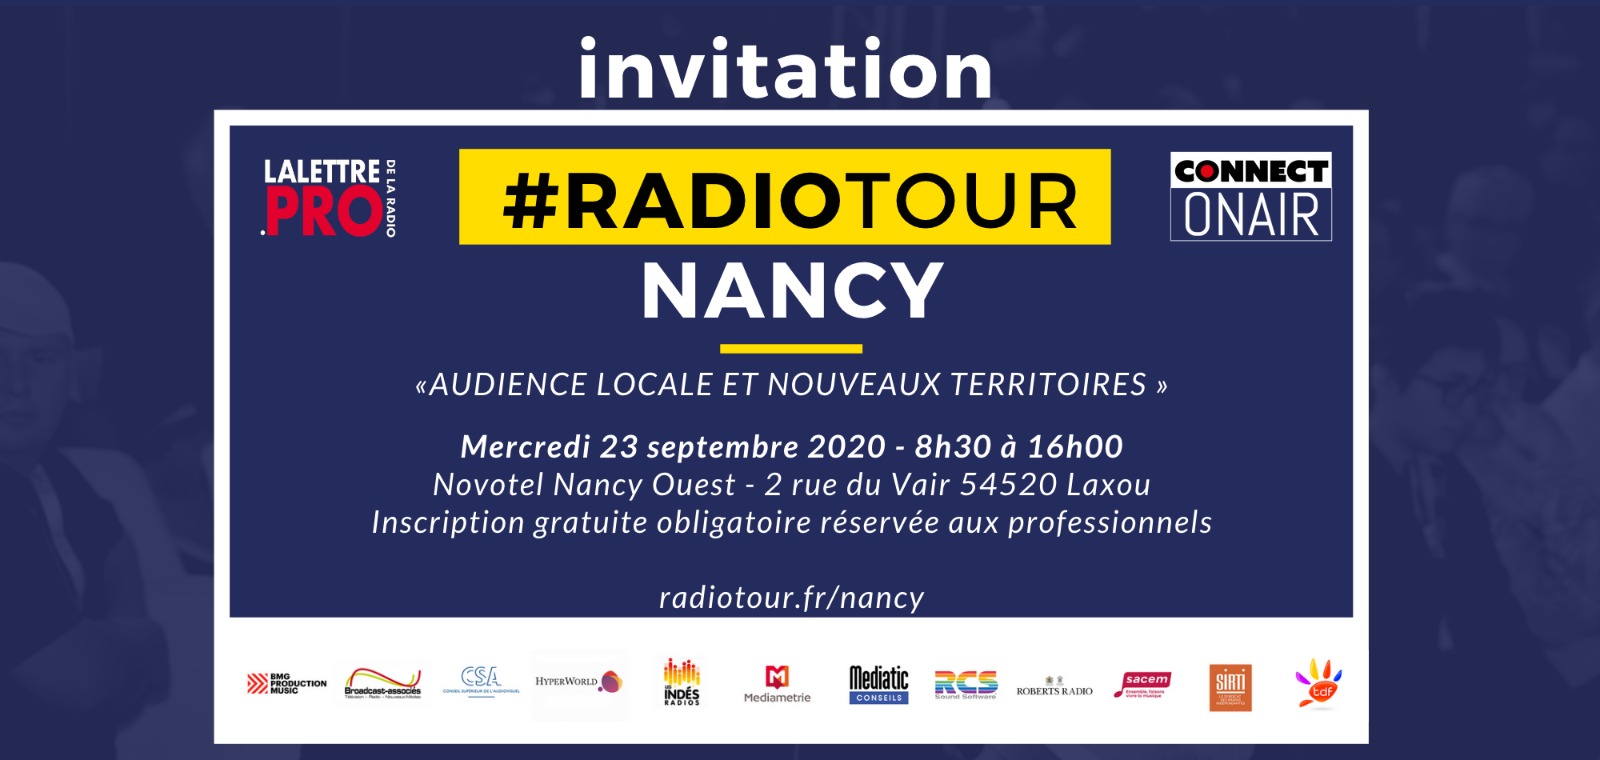 RadioTour à Nancy : voici le programme